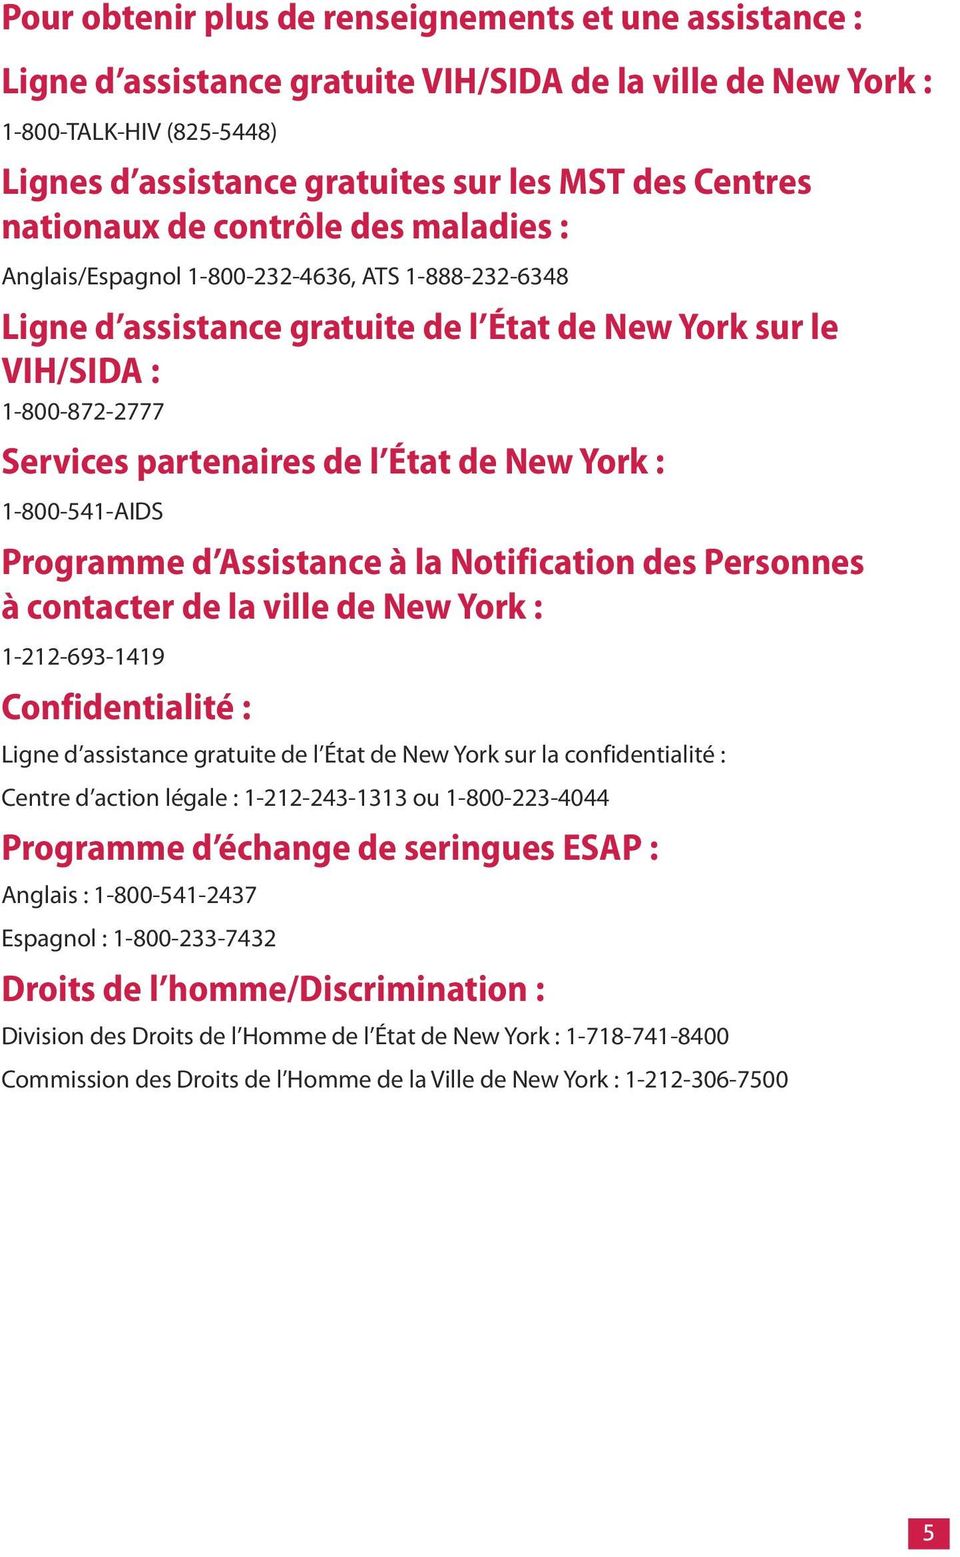 État de New York : 1-800-541-AIDS Programme d Assistance à la Notification des Personnes à contacter de la ville de New York : 1-212-693-1419 Confidentialité : Ligne d assistance gratuite de l État